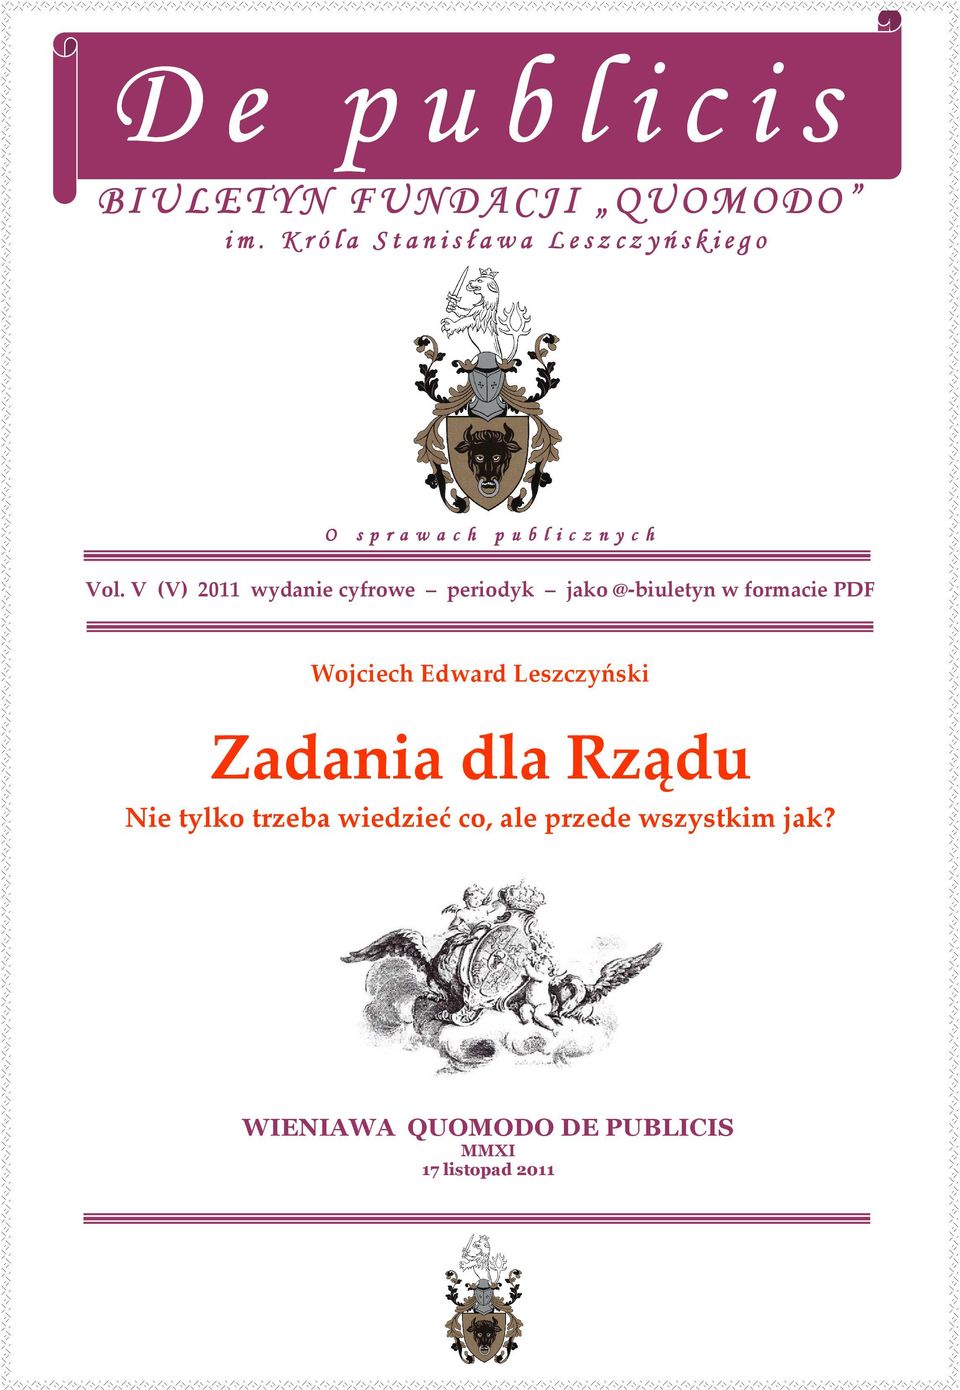 Vol. V (V) 2011 wydanie cyfrowe periodyk jako @-biuletyn w formacie PDF Wojciech Edward